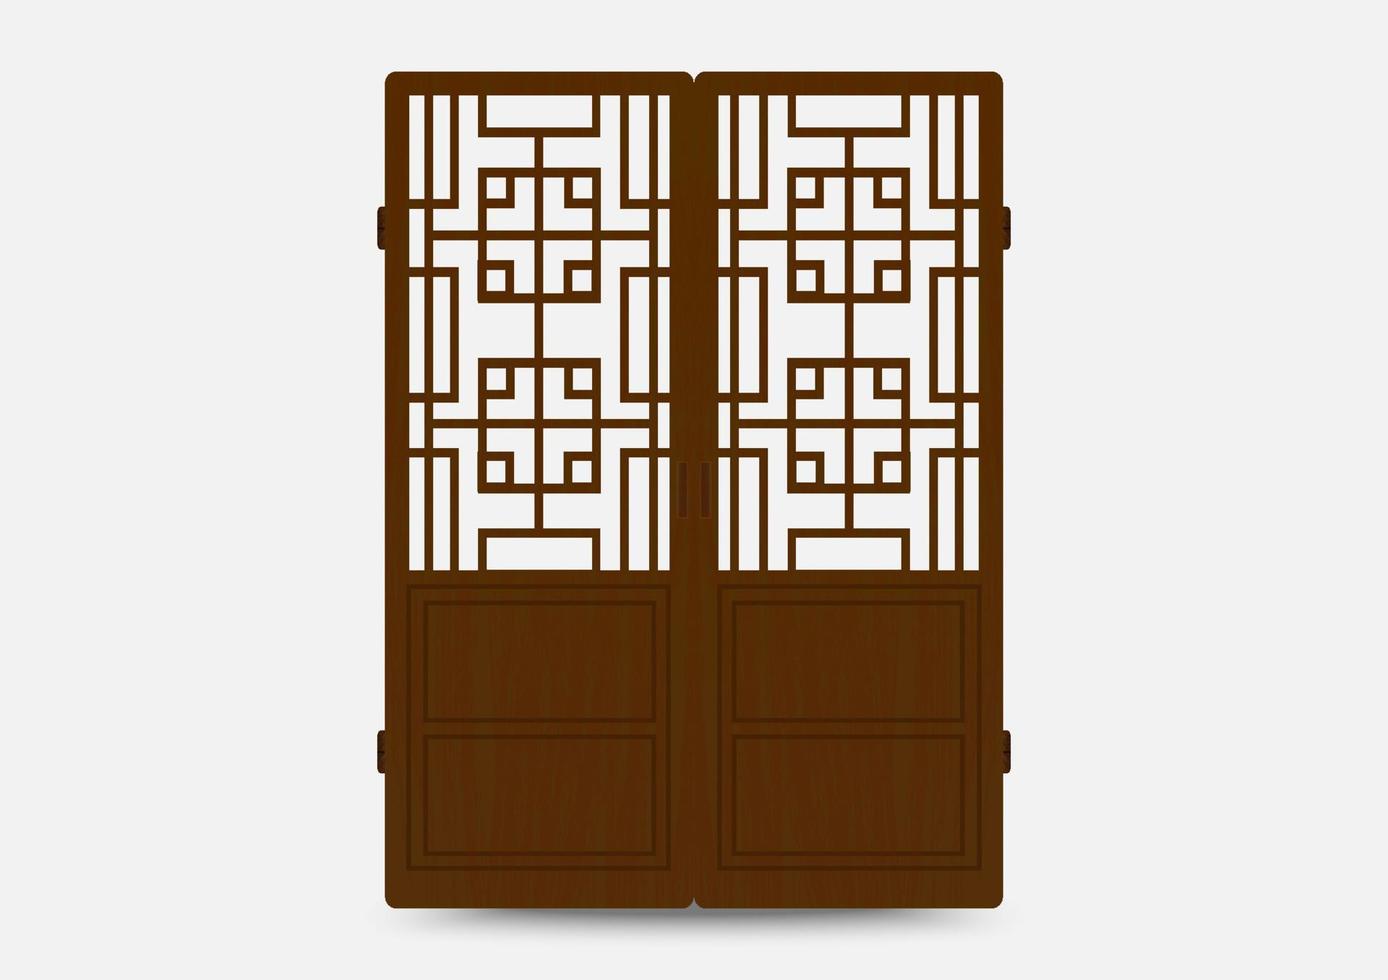 traditionele Koreaanse ornament frame patroon. set van deur en raam antieke decoratie kunst. silhouet vectorillustratie. vector